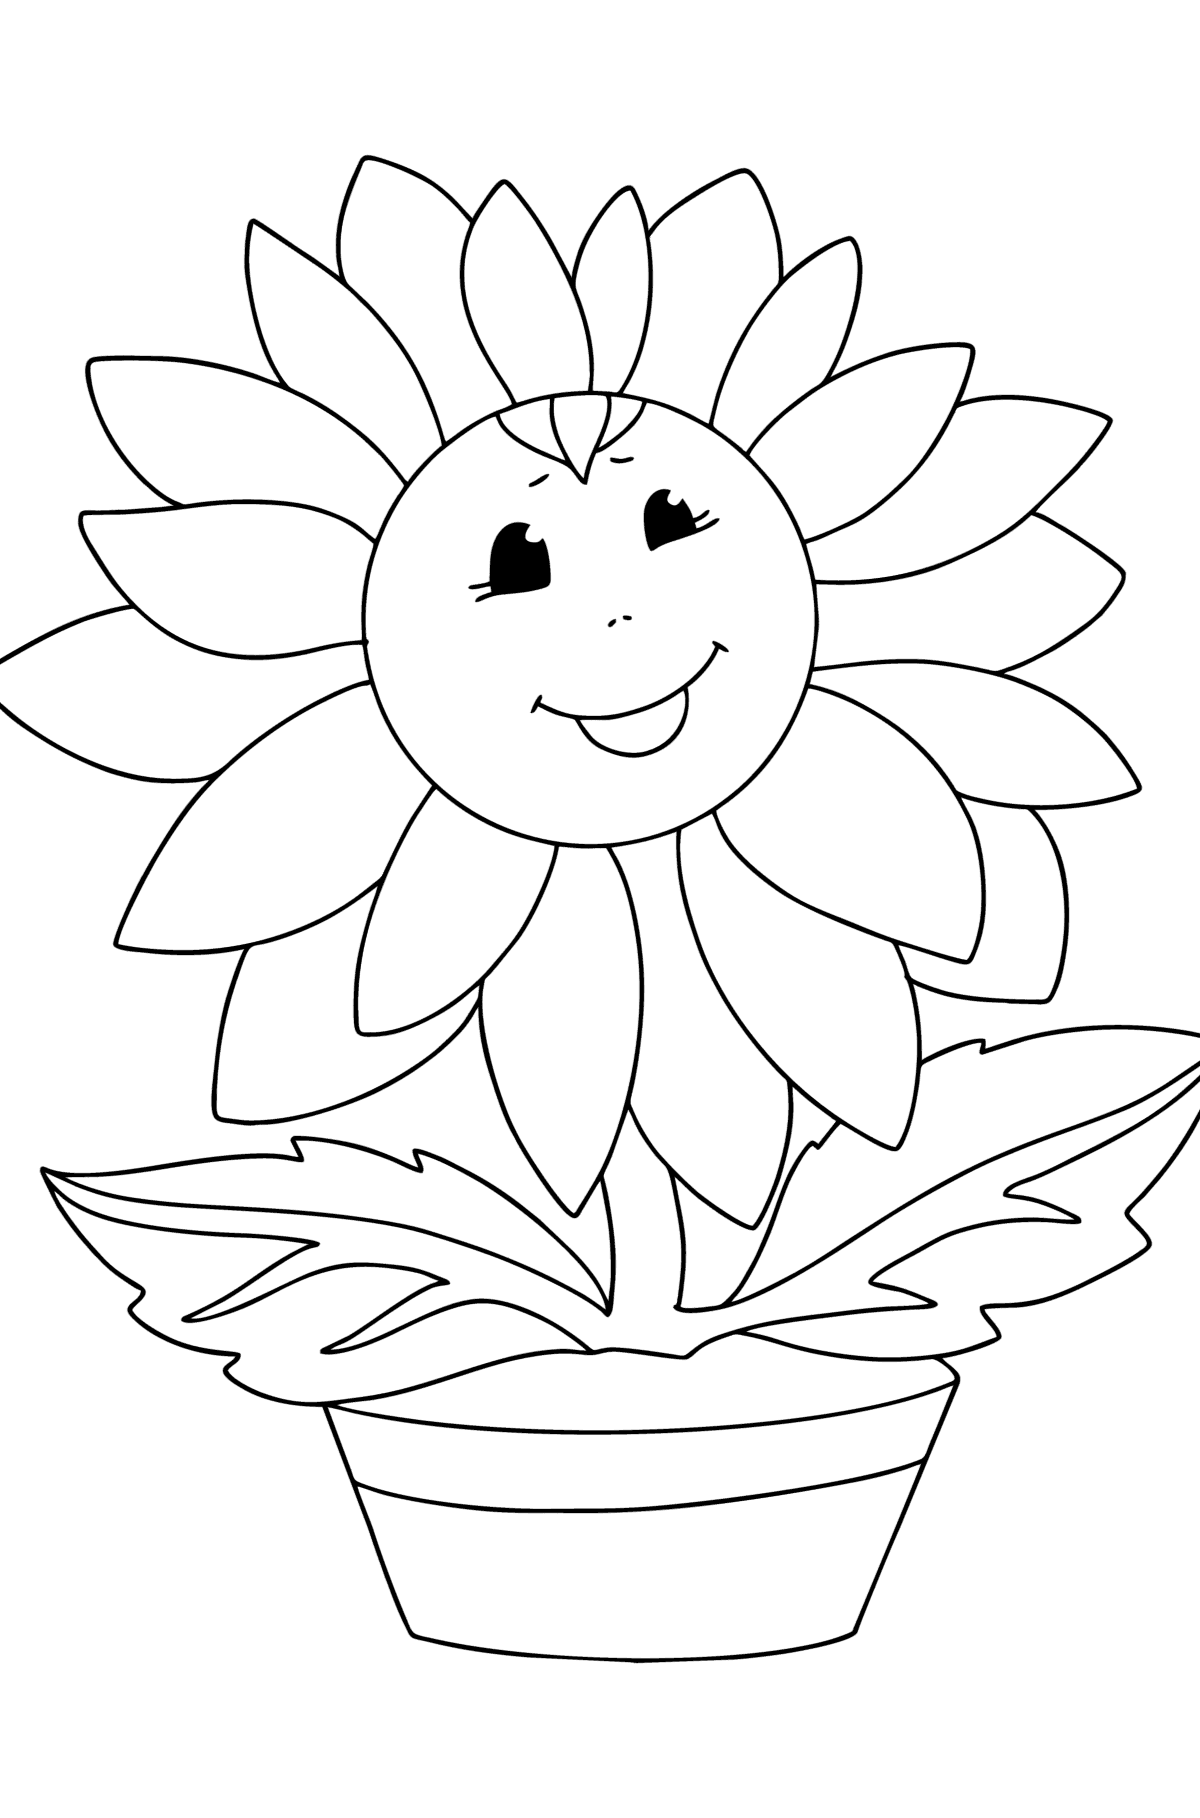 Ausmalbild Sonnenblume mit Augen - Malvorlagen für Kinder